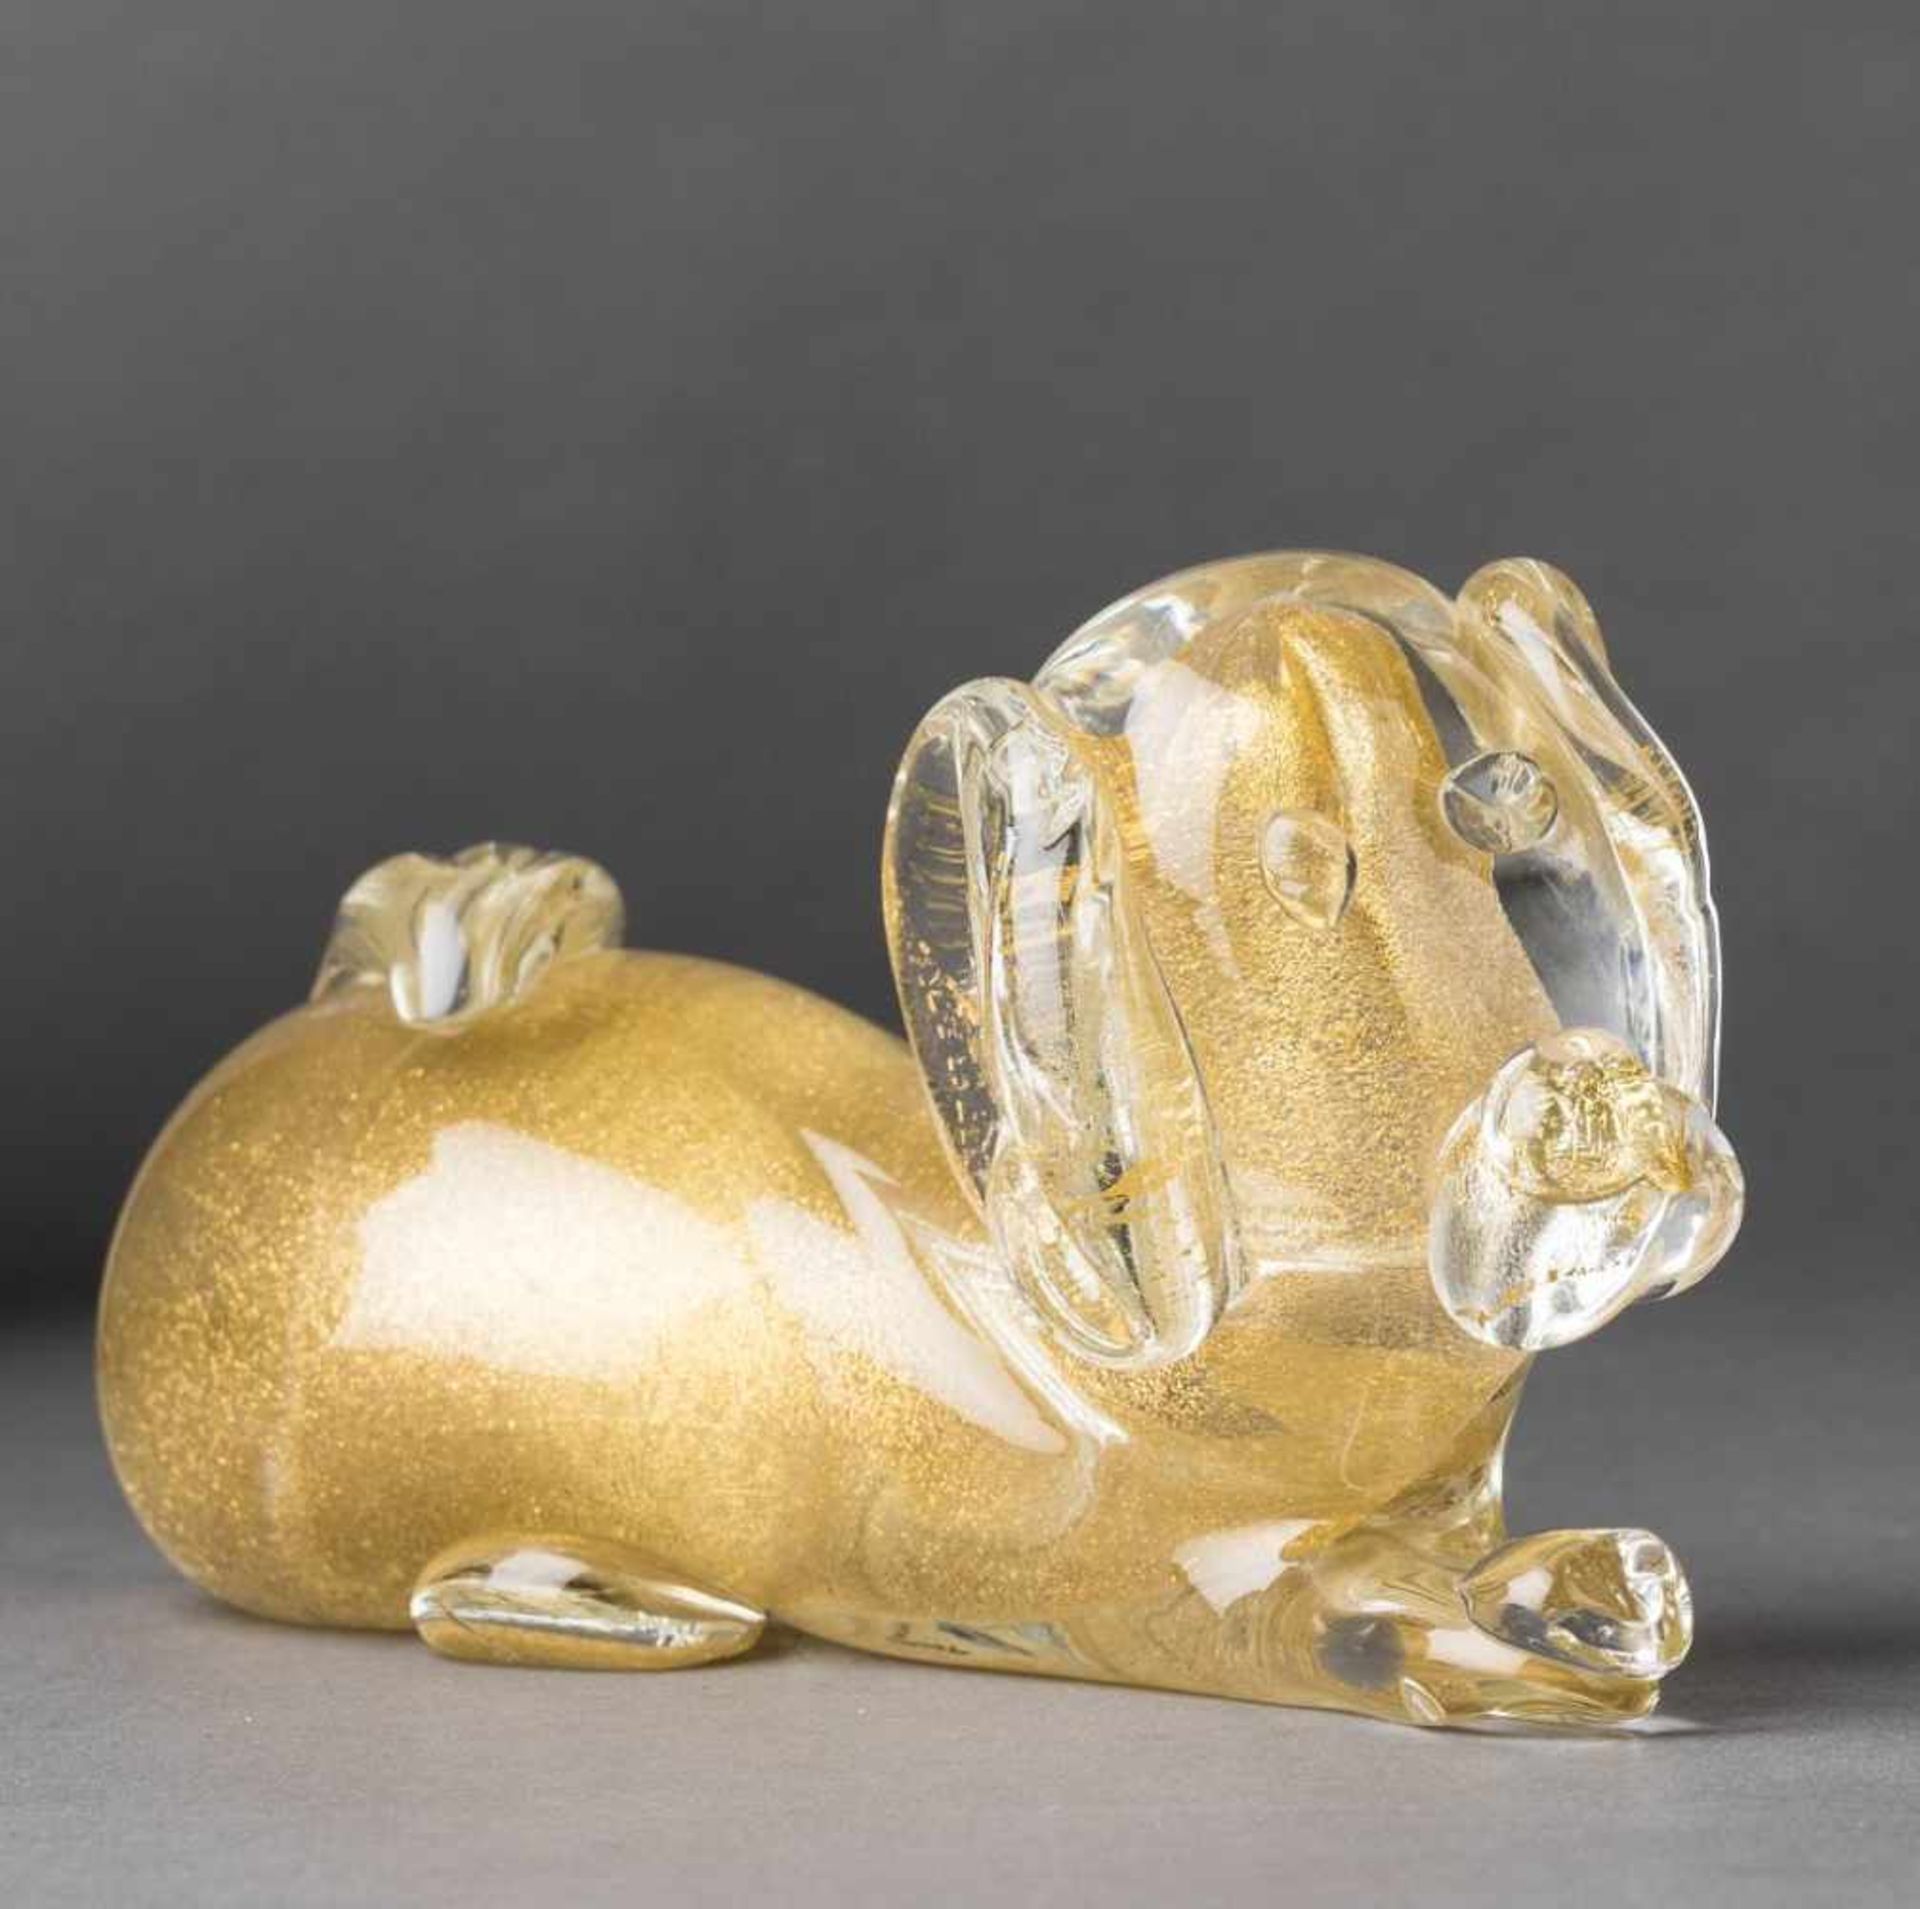 Hundefigur. Farbloses Glas mit Goldstaub. Murano. L 16 cm- - -27.00 % buyer's premium on the